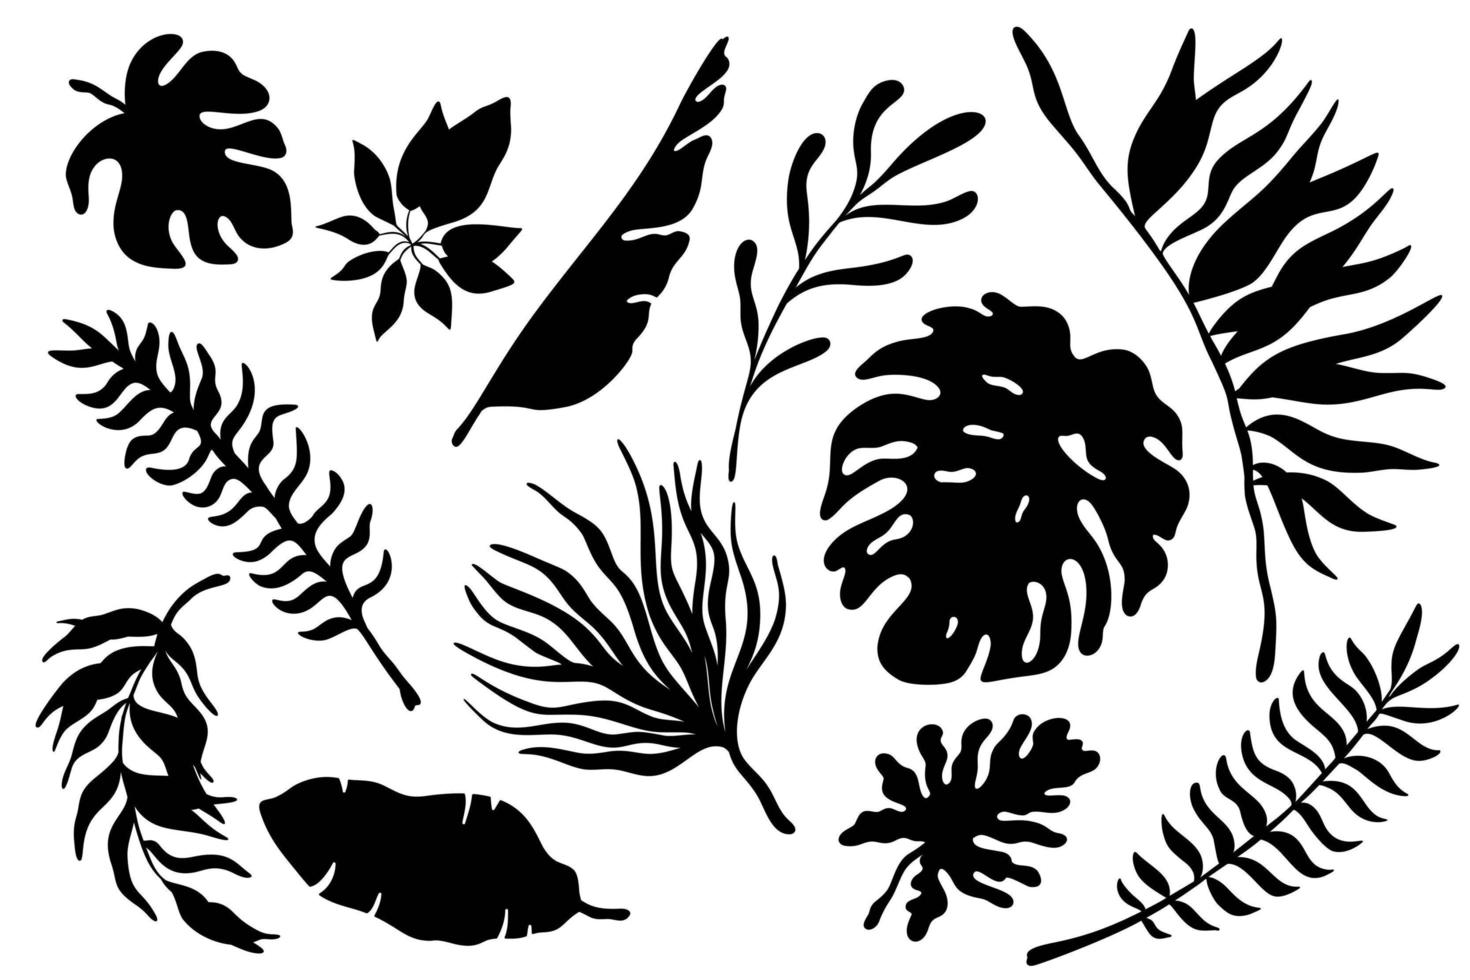 ensemble de silhouettes noires vectorielles feuilles de palmiers tropicaux. feuilles de monstera exotiques de la jungle monochrome, feuilles de bananier, alocasia vecteur